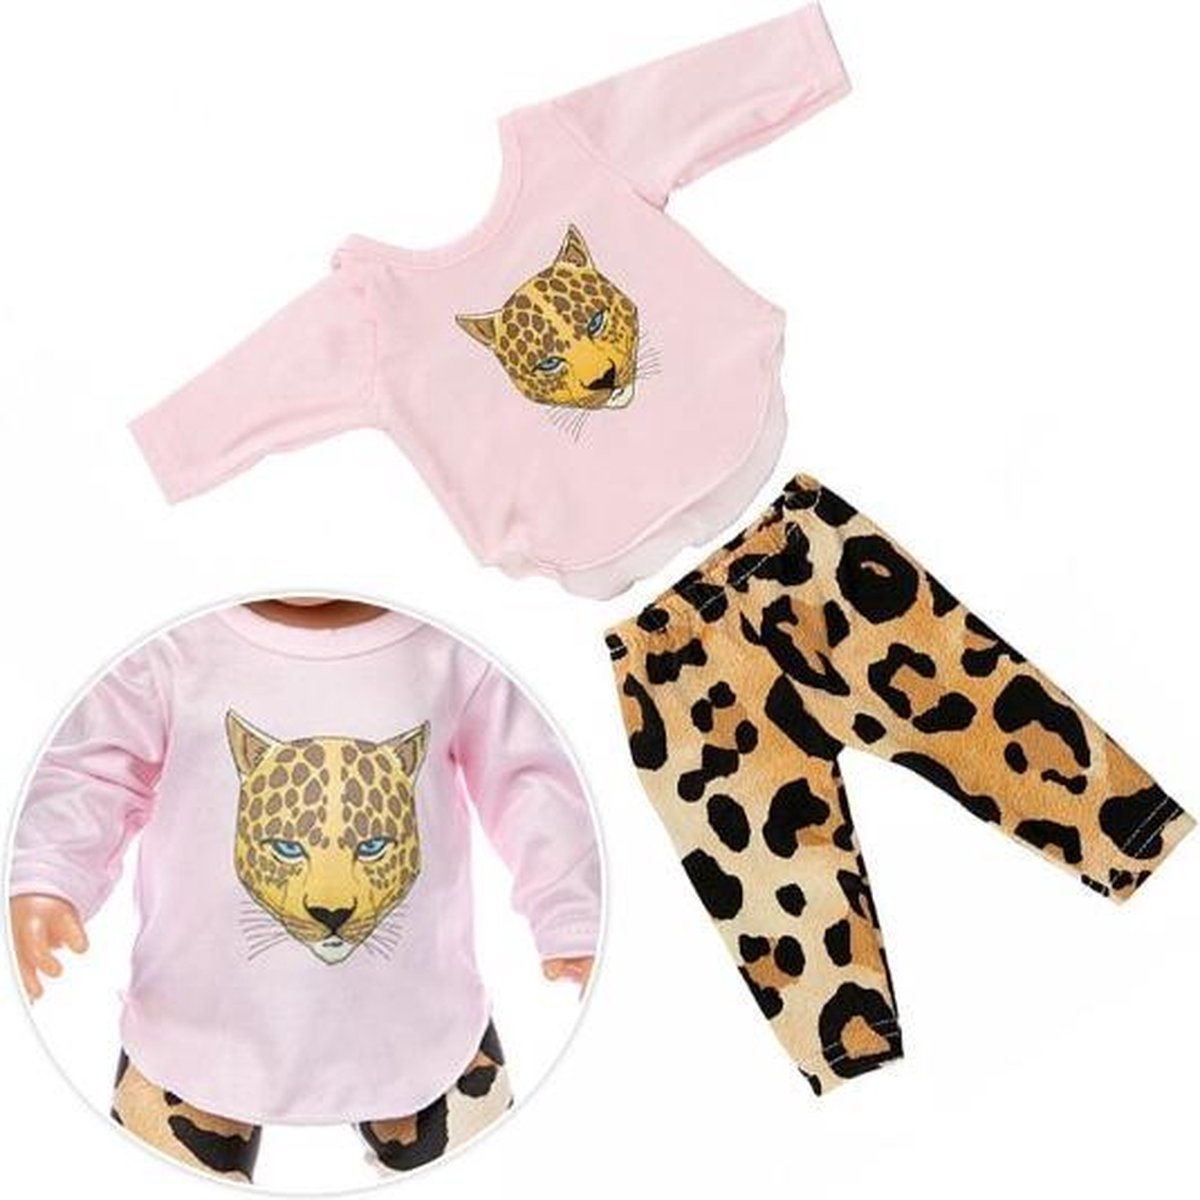 Favorite Things - Poppenkleertjes - Roze kleding set met luipaard - Geschikt voor pop tot 43cm - Favorite Things